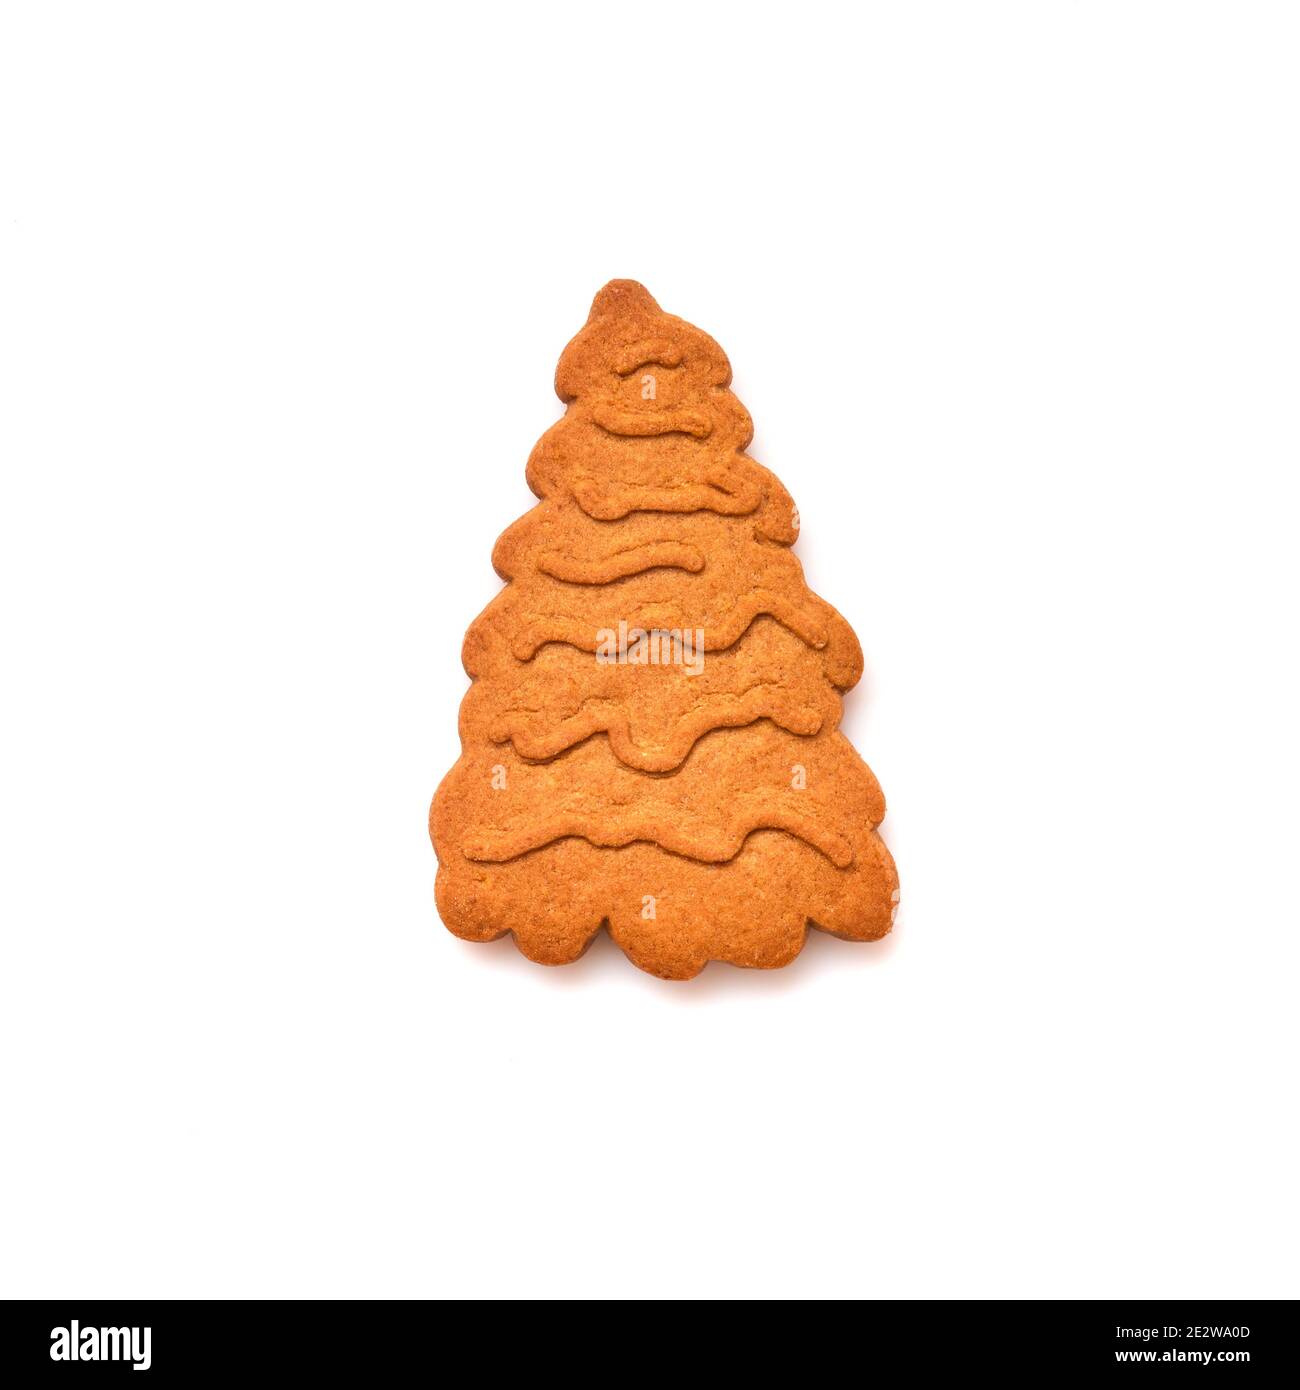 New Year pan di zenzero o biscotti a forma di albero di Natale isolati su sfondo bianco. Immagine quadrata. Vista dall'alto. Foto Stock